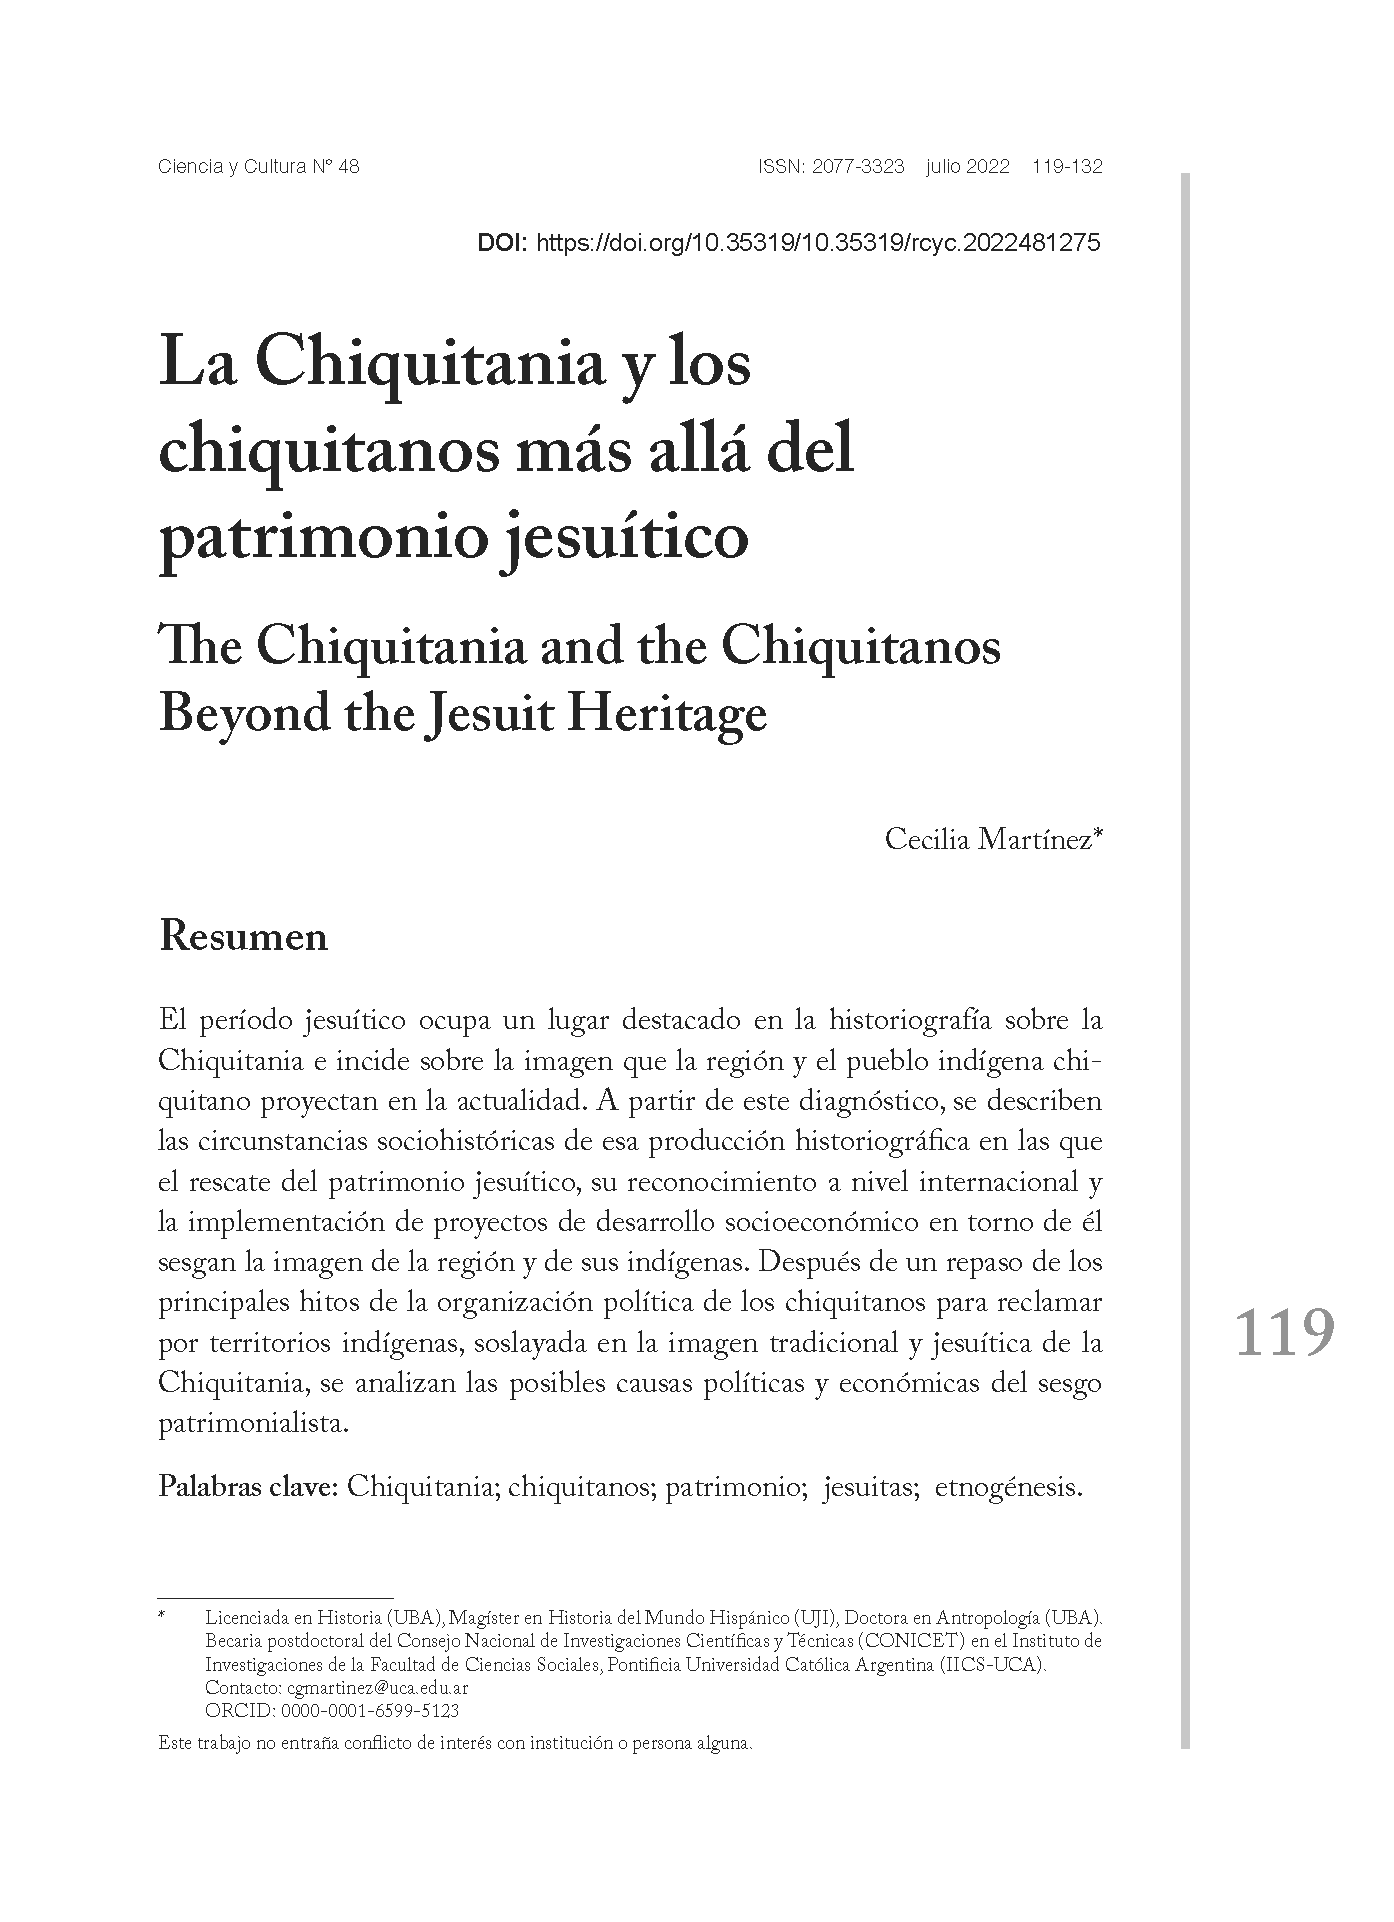 La Chiquitania y los chiquitanos más allá del patrimonio jesuítico